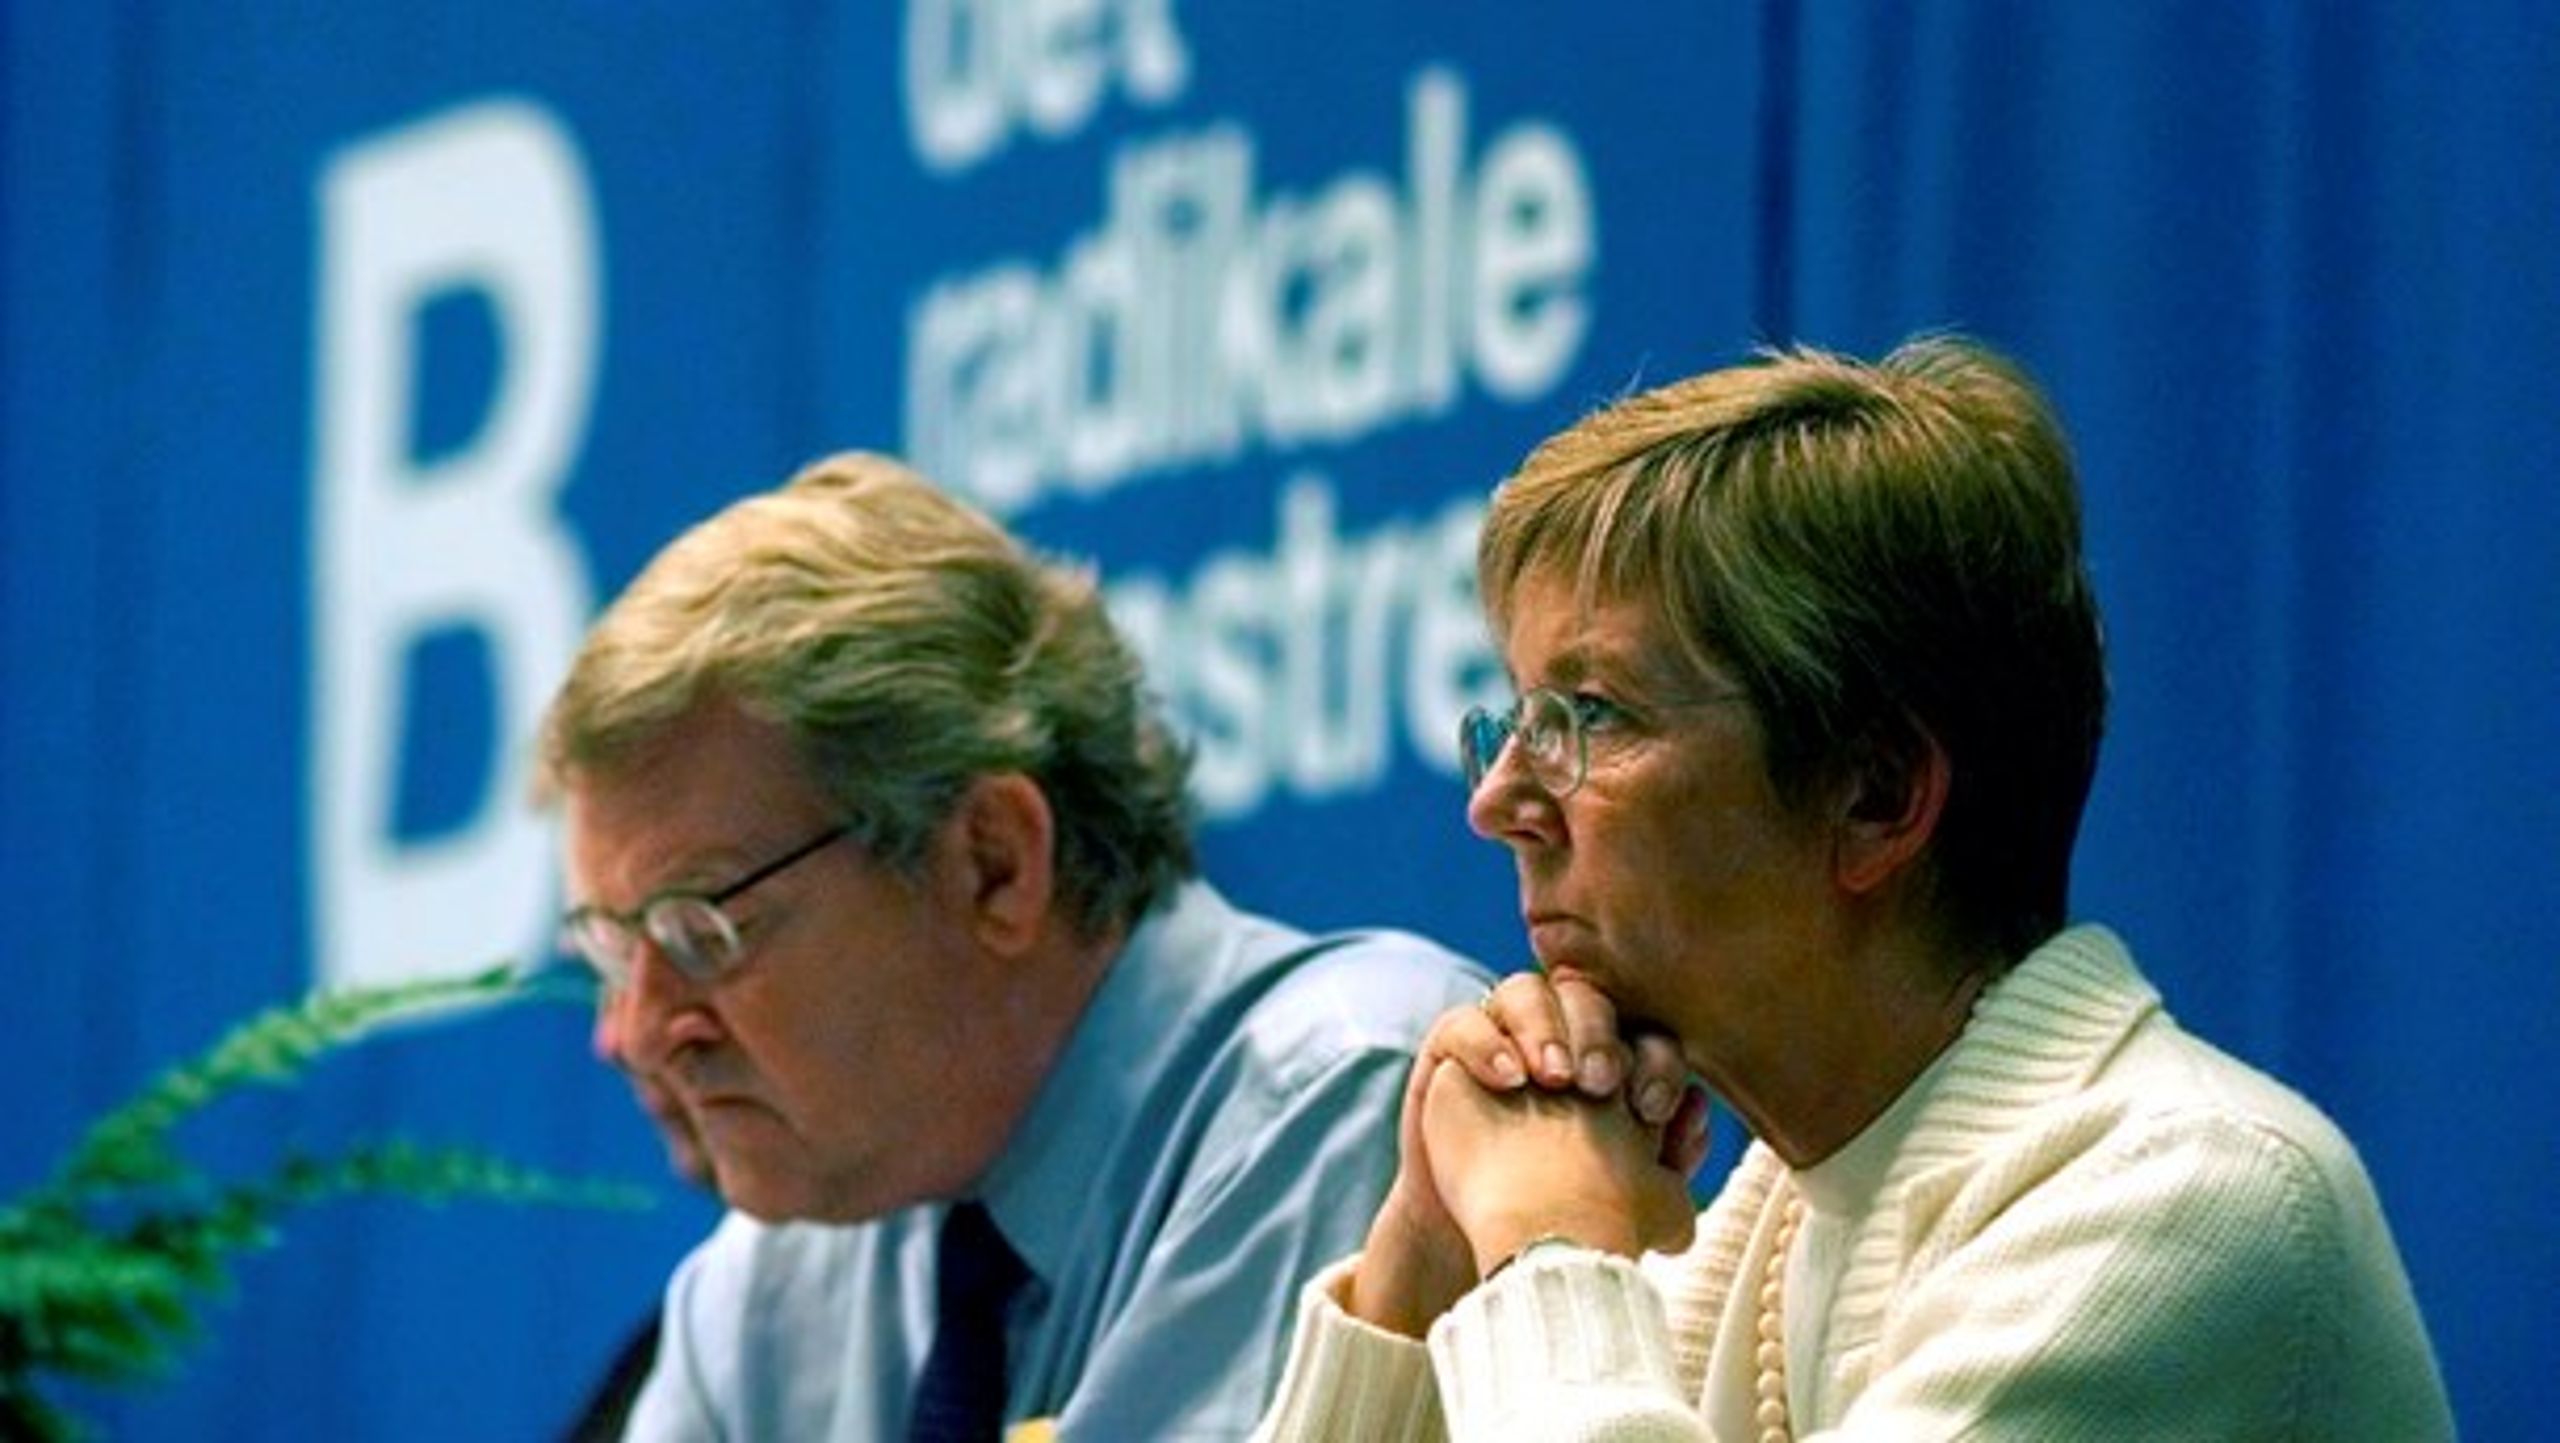 De tidligere radikale ledere Niels Helveg Petersen og Marianne Jelved fra dengang, hvor "Radikale enten regerede eller var i regering".&nbsp;